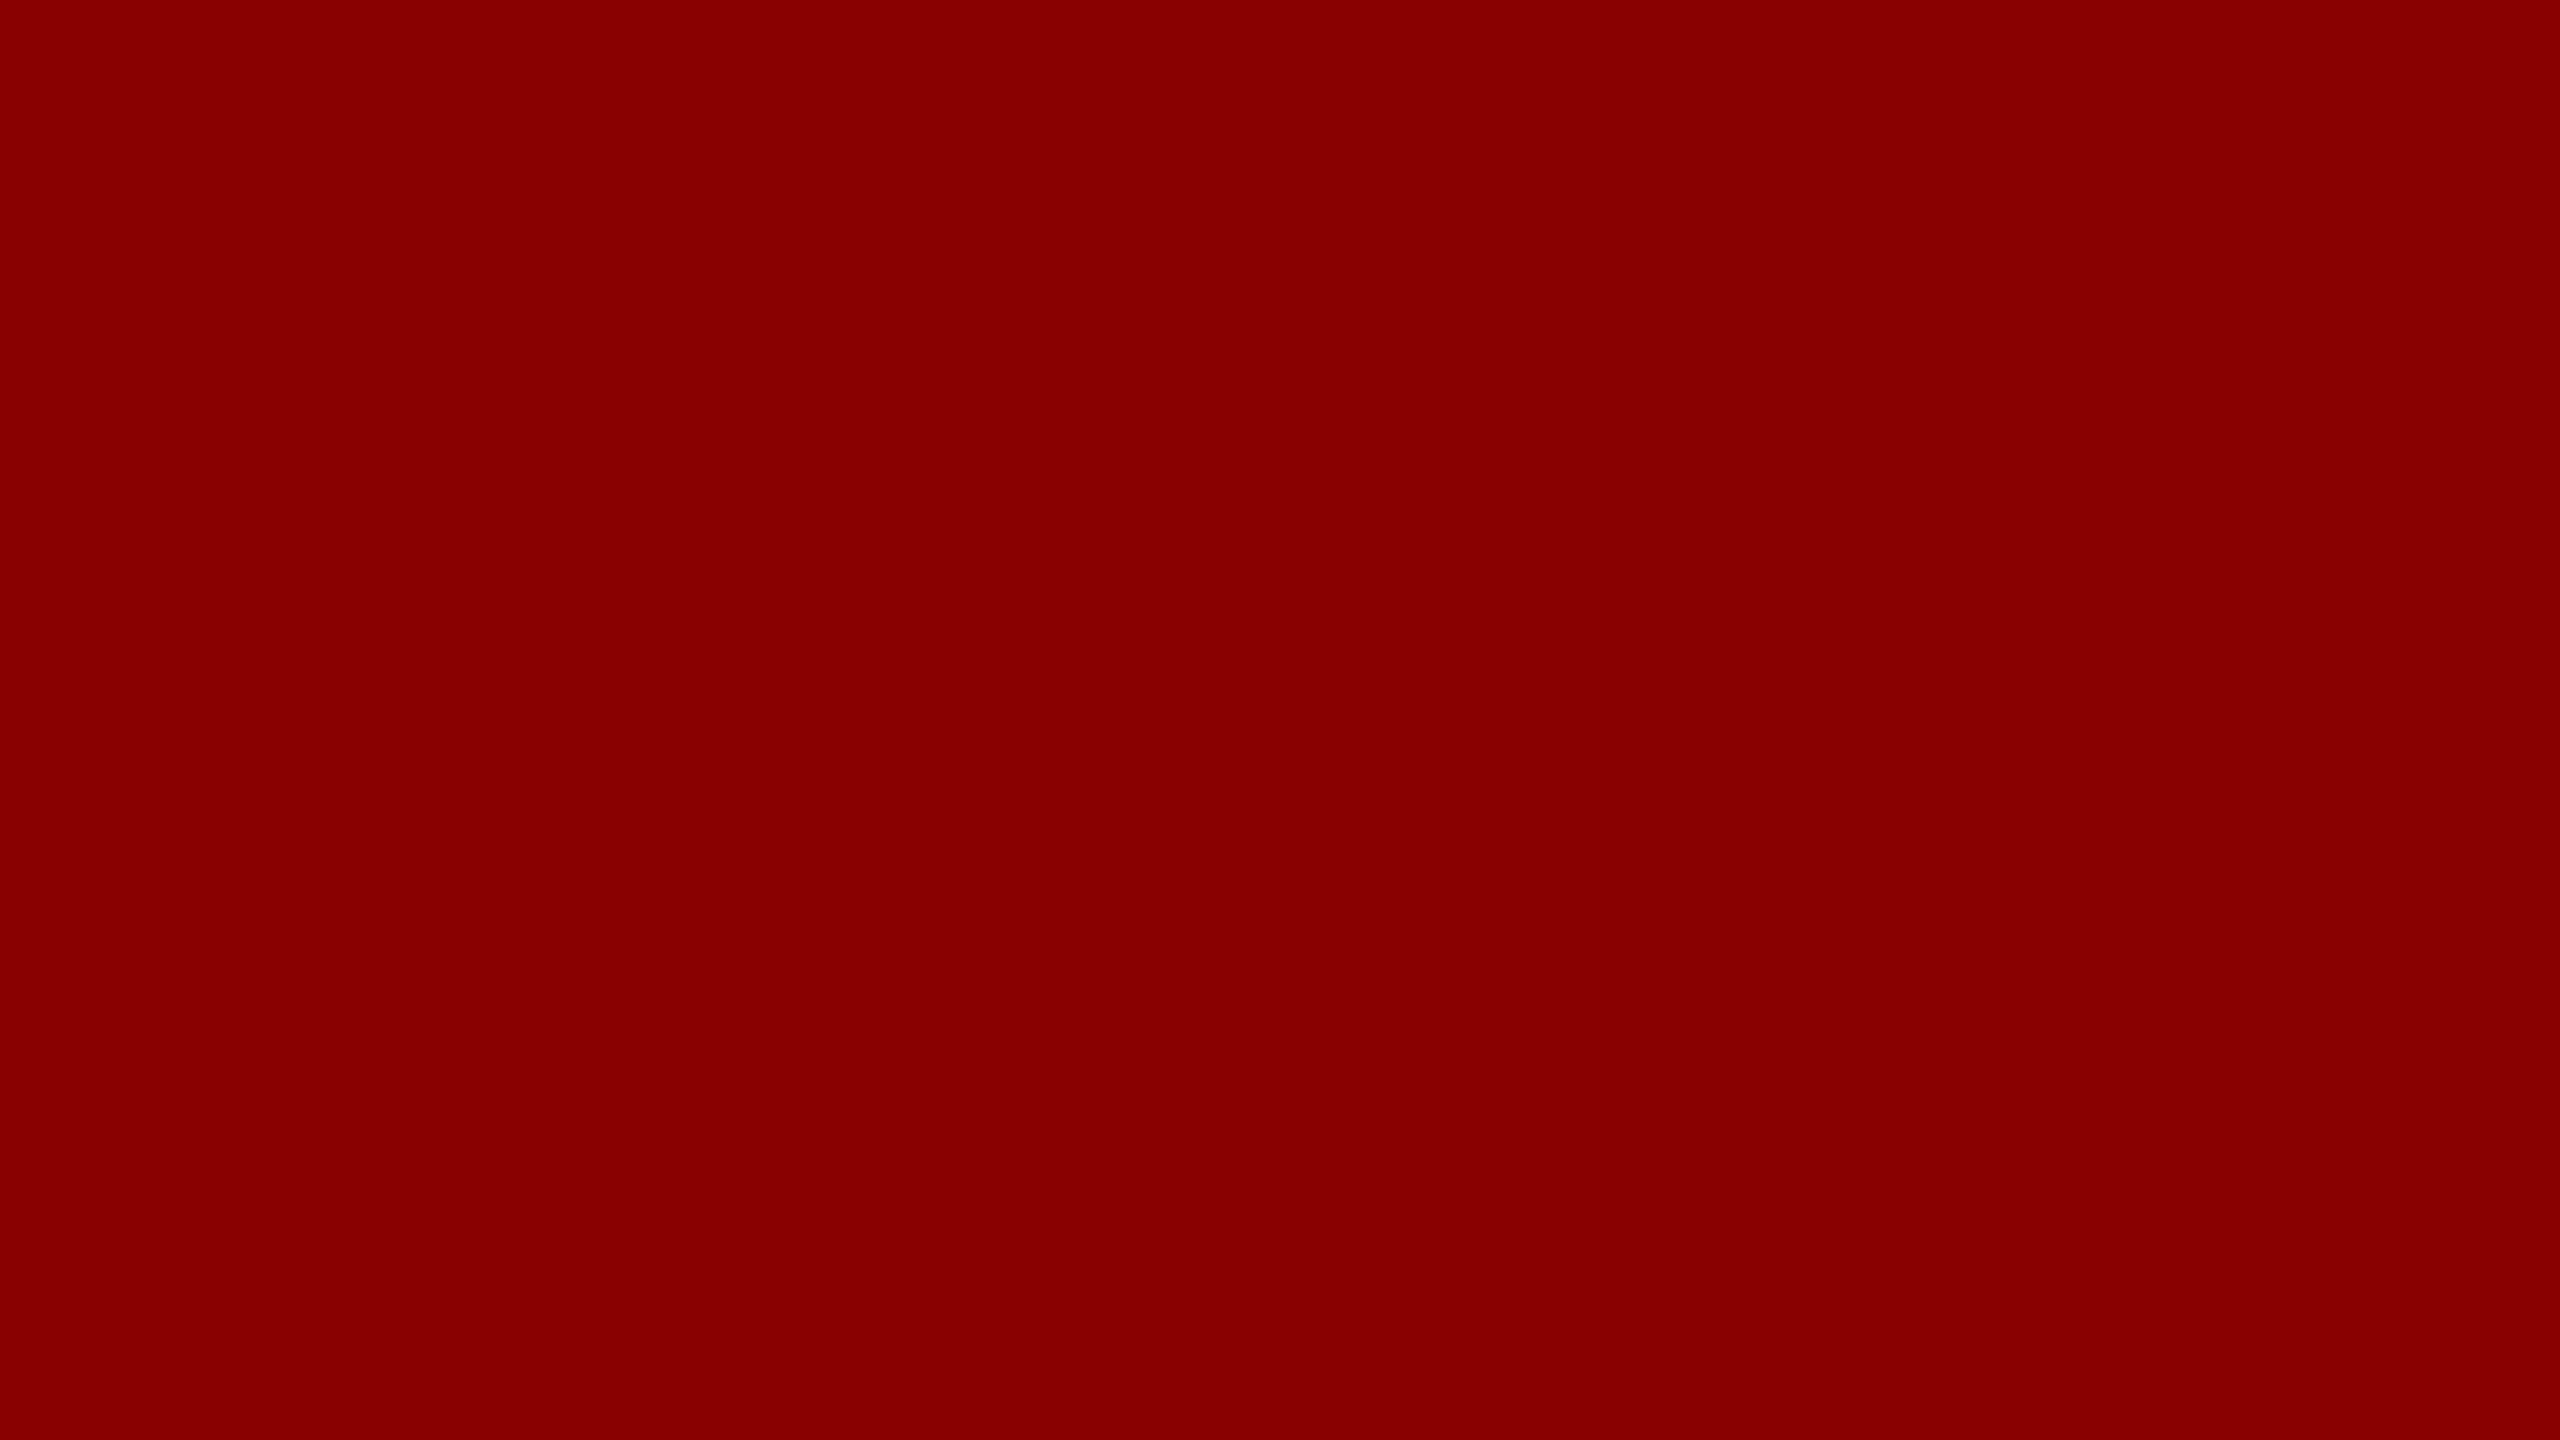 Mørkrød Baggrund, Ensfarvet Rød Farve.